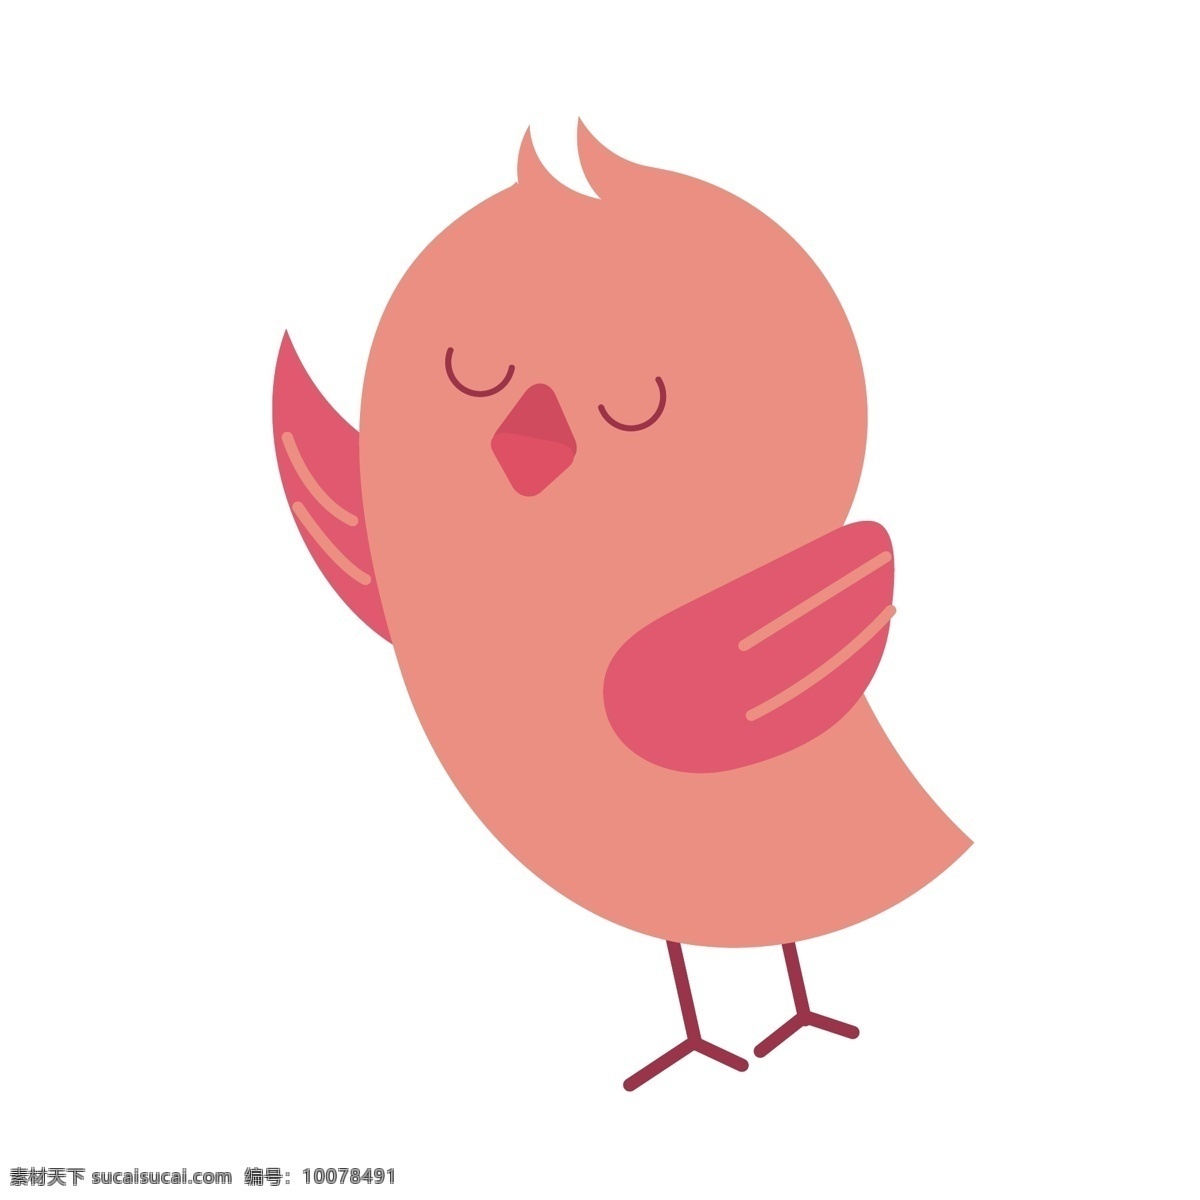 可爱 小鸟 矢量 粉色 粉色的小鸟 可爱的小鸟 萌萌的 萌萌的小鸟 小鸟卡通 卡通小鸟 电商 电商设计